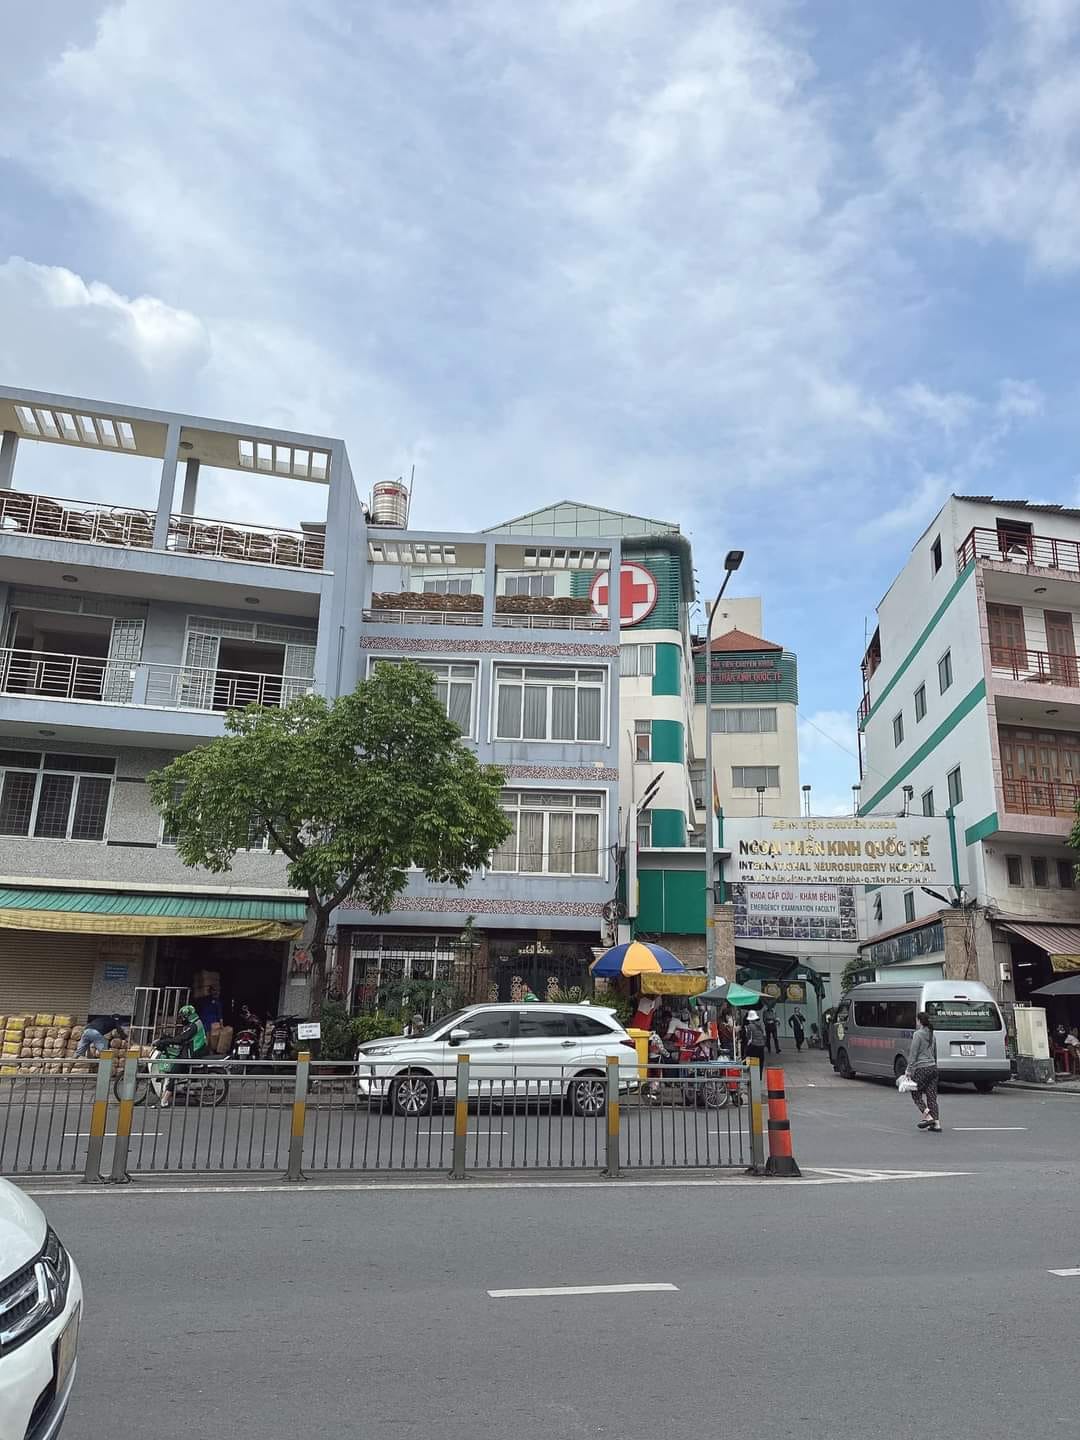 Bán nhà Mặt Tiền Lũy Bán Bích - TT.Hòa - Tân Phú - Kinh doanh đỉnh - 95m2( 4,6mx22m) - Giá 15 tỷ